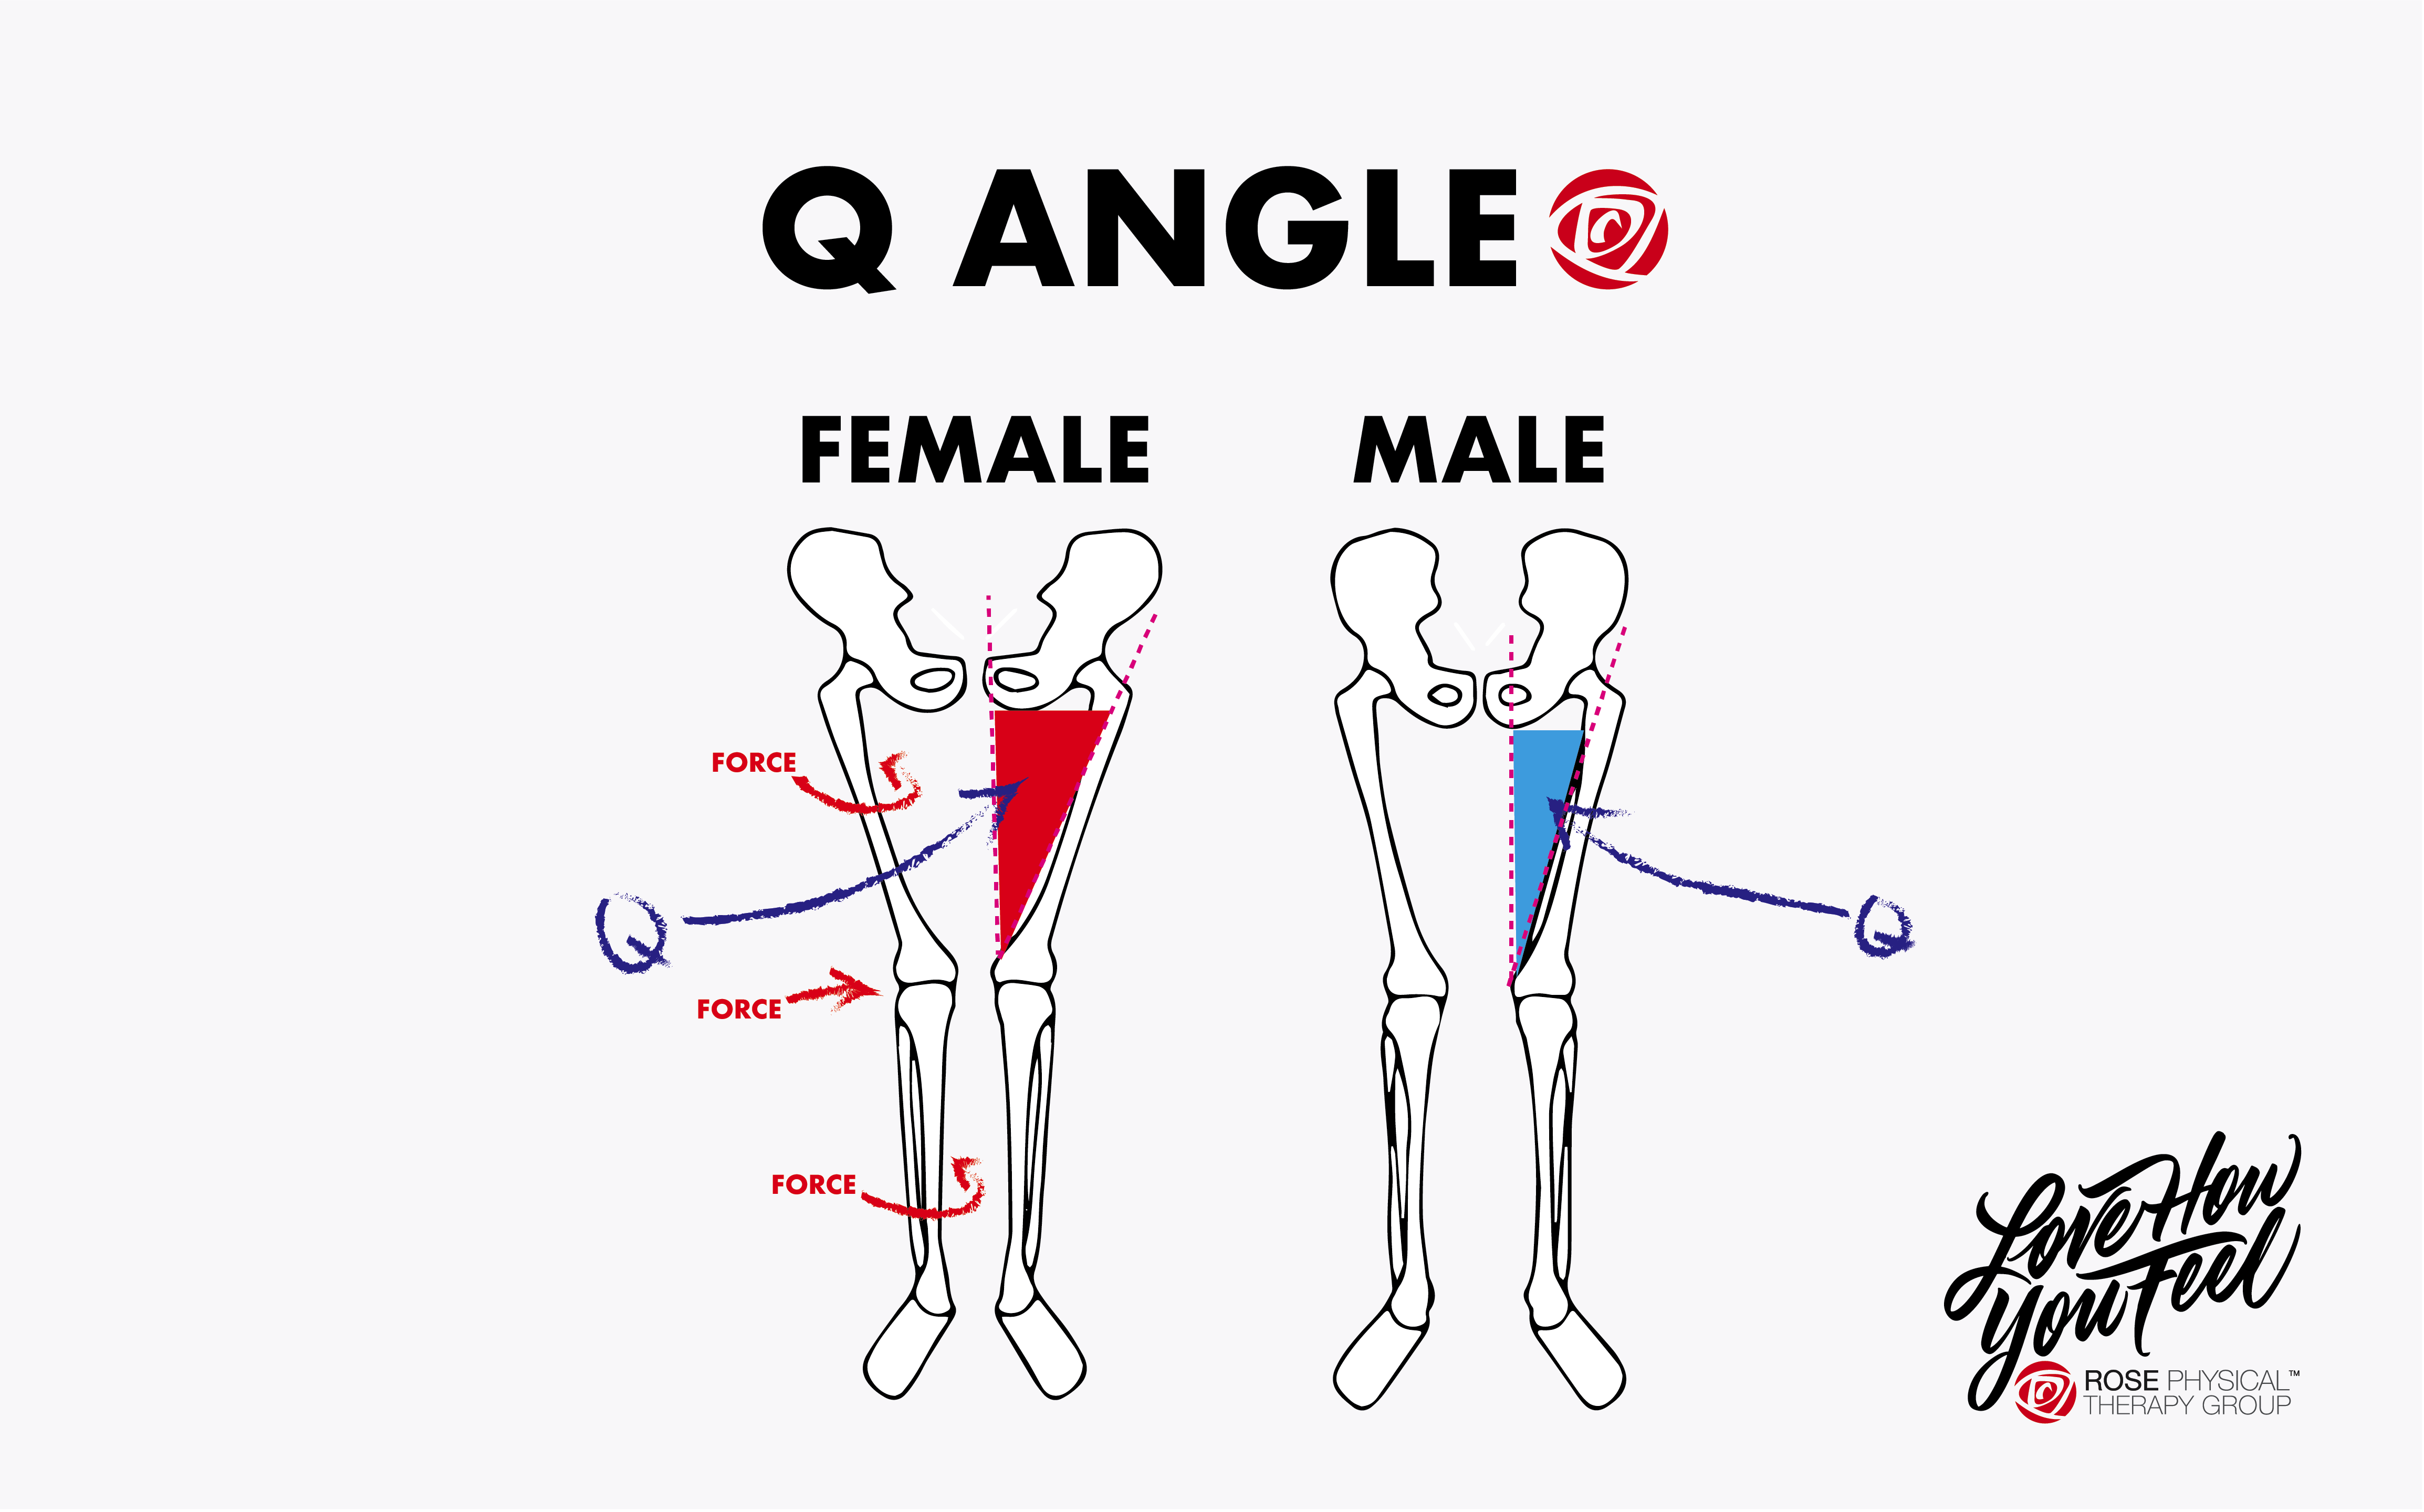 Q Angle men versus women